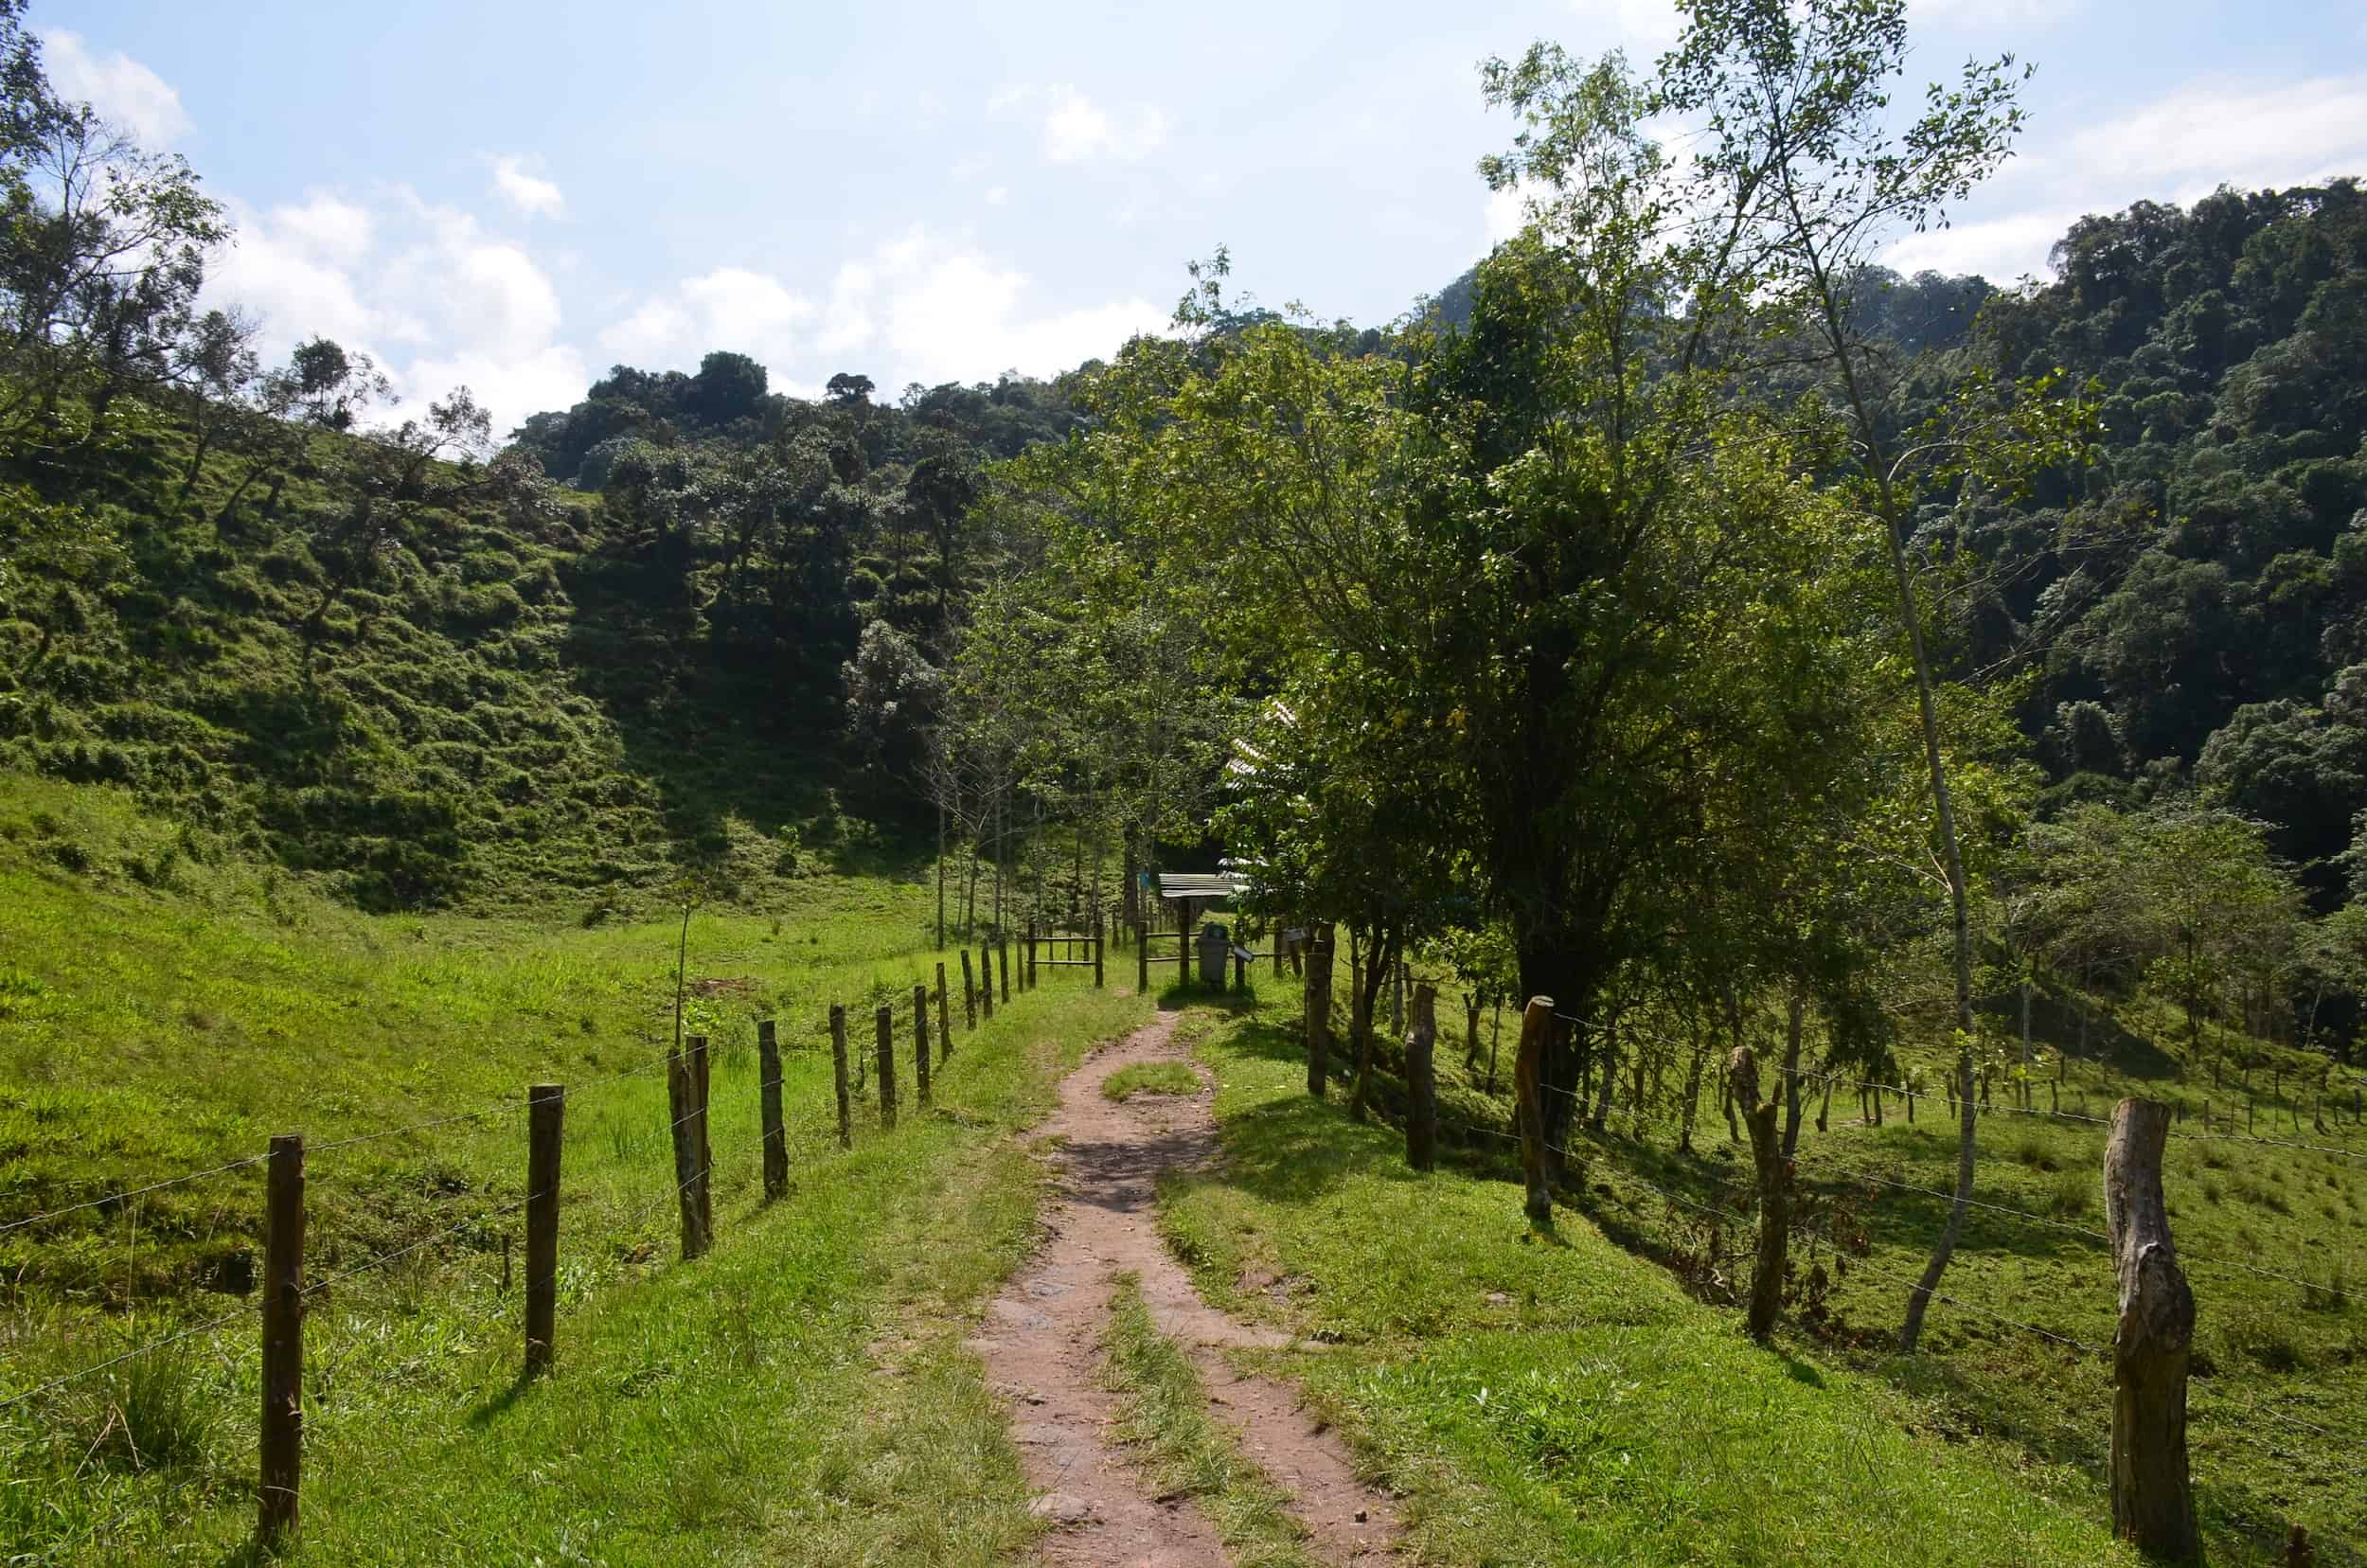 Antonio Trail at Santa Rita Nature Reserve in Boquía, Salento, Quindío, Colombia